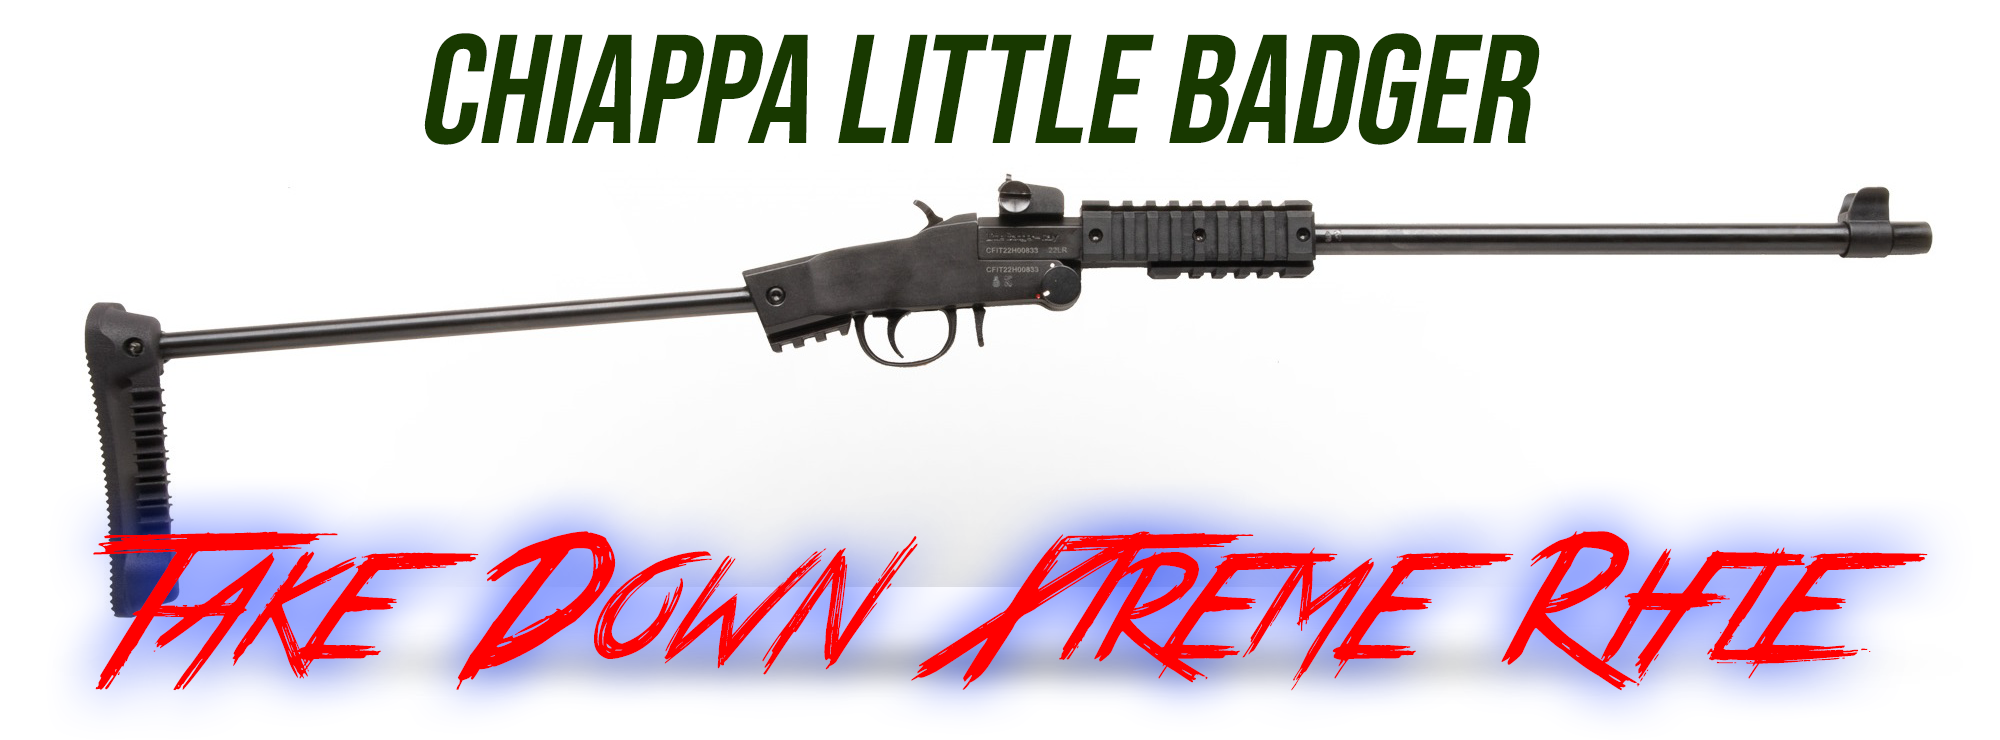 Chiappa Firearms' New Little Badger Take Down Xtreme Rifle